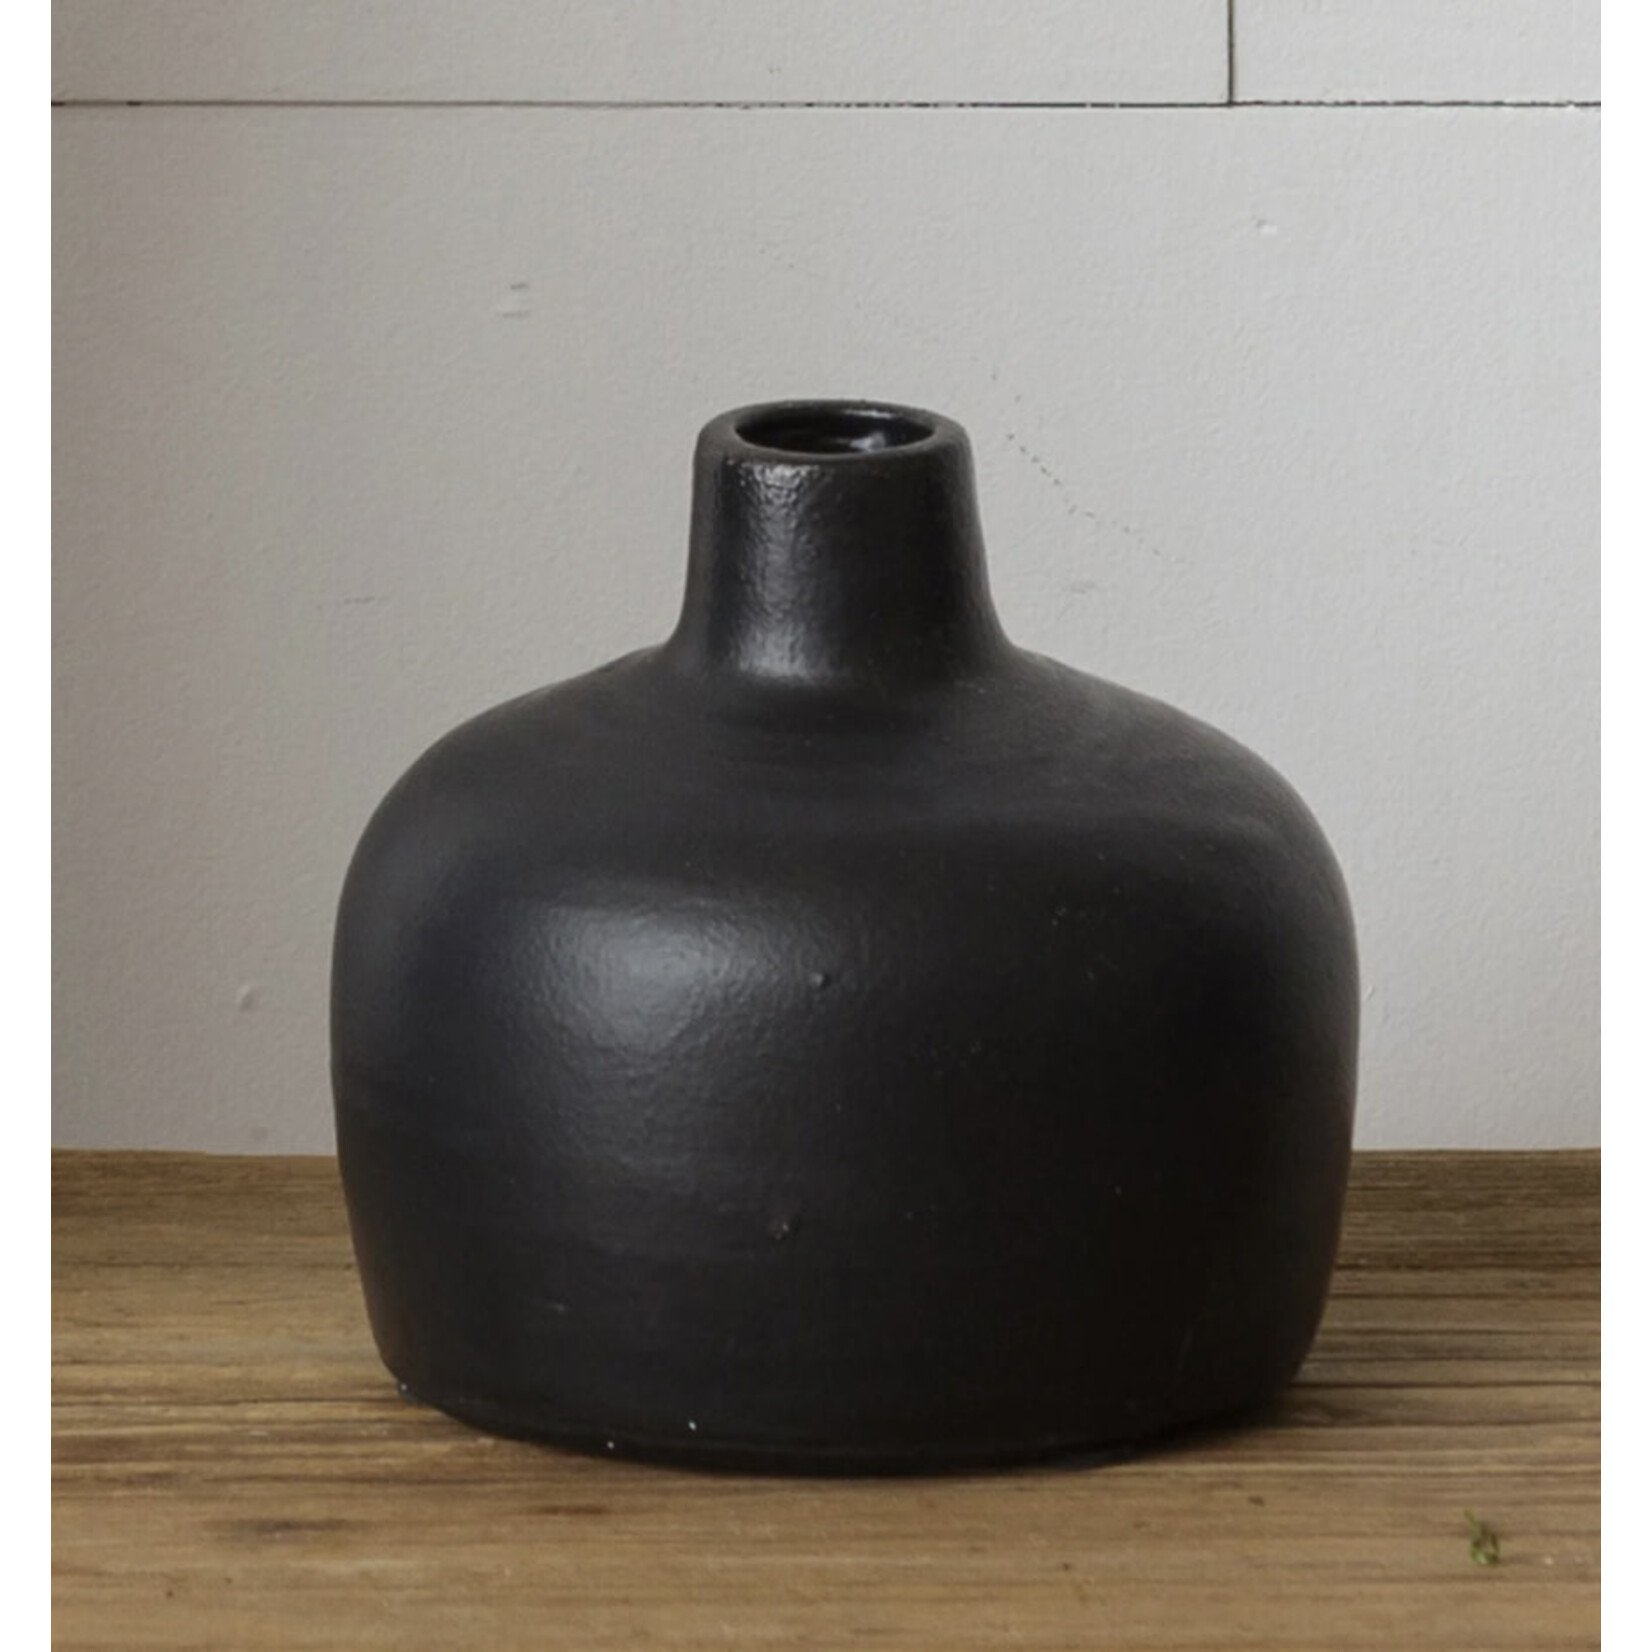 Audrey’s Black Matte Vase